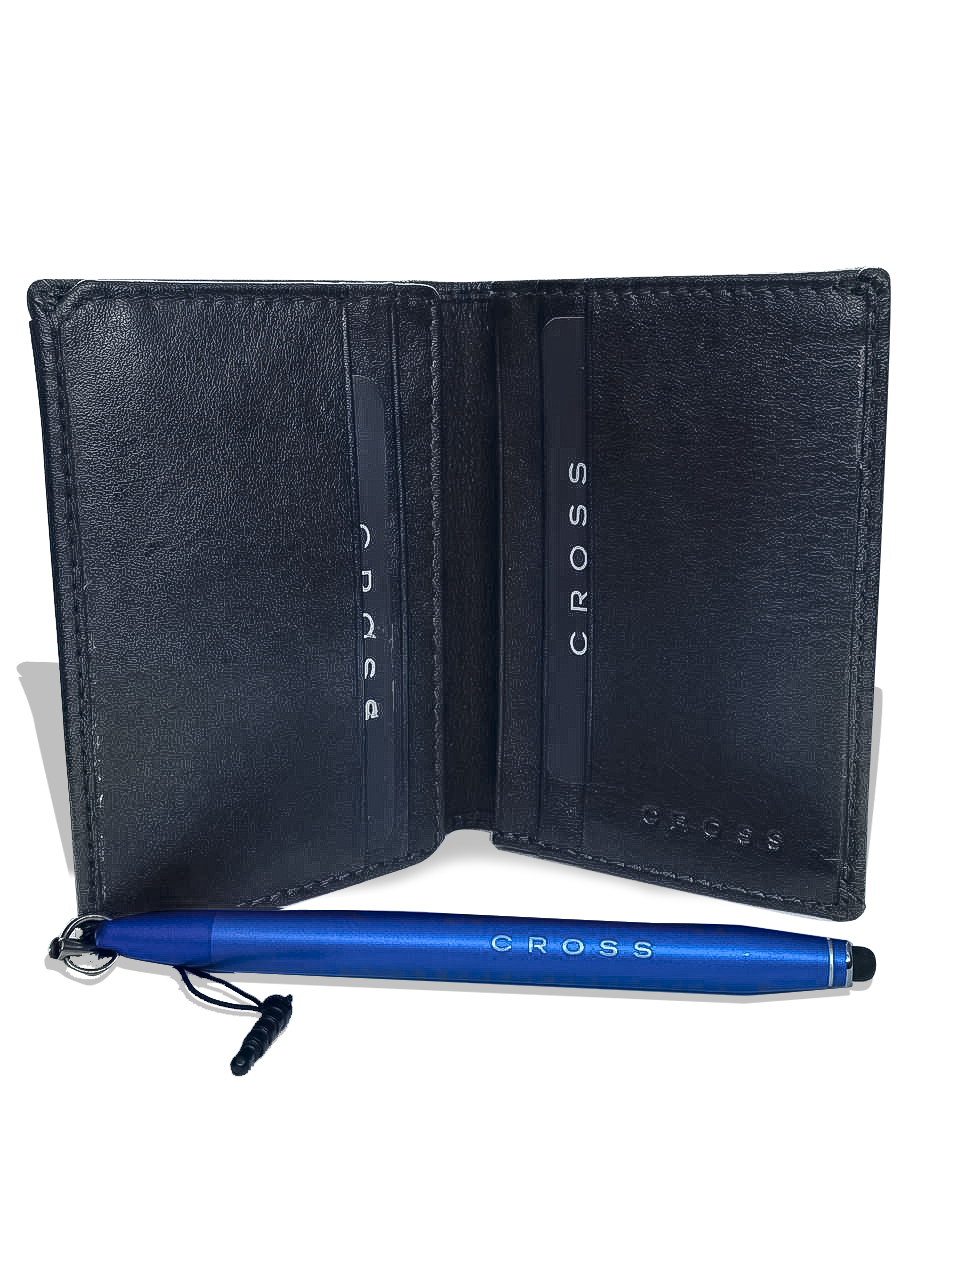 Подарочный набор портмоне Cross + стилус Cross Tech1 Metallic AT0679-6 Ручки и карандаши